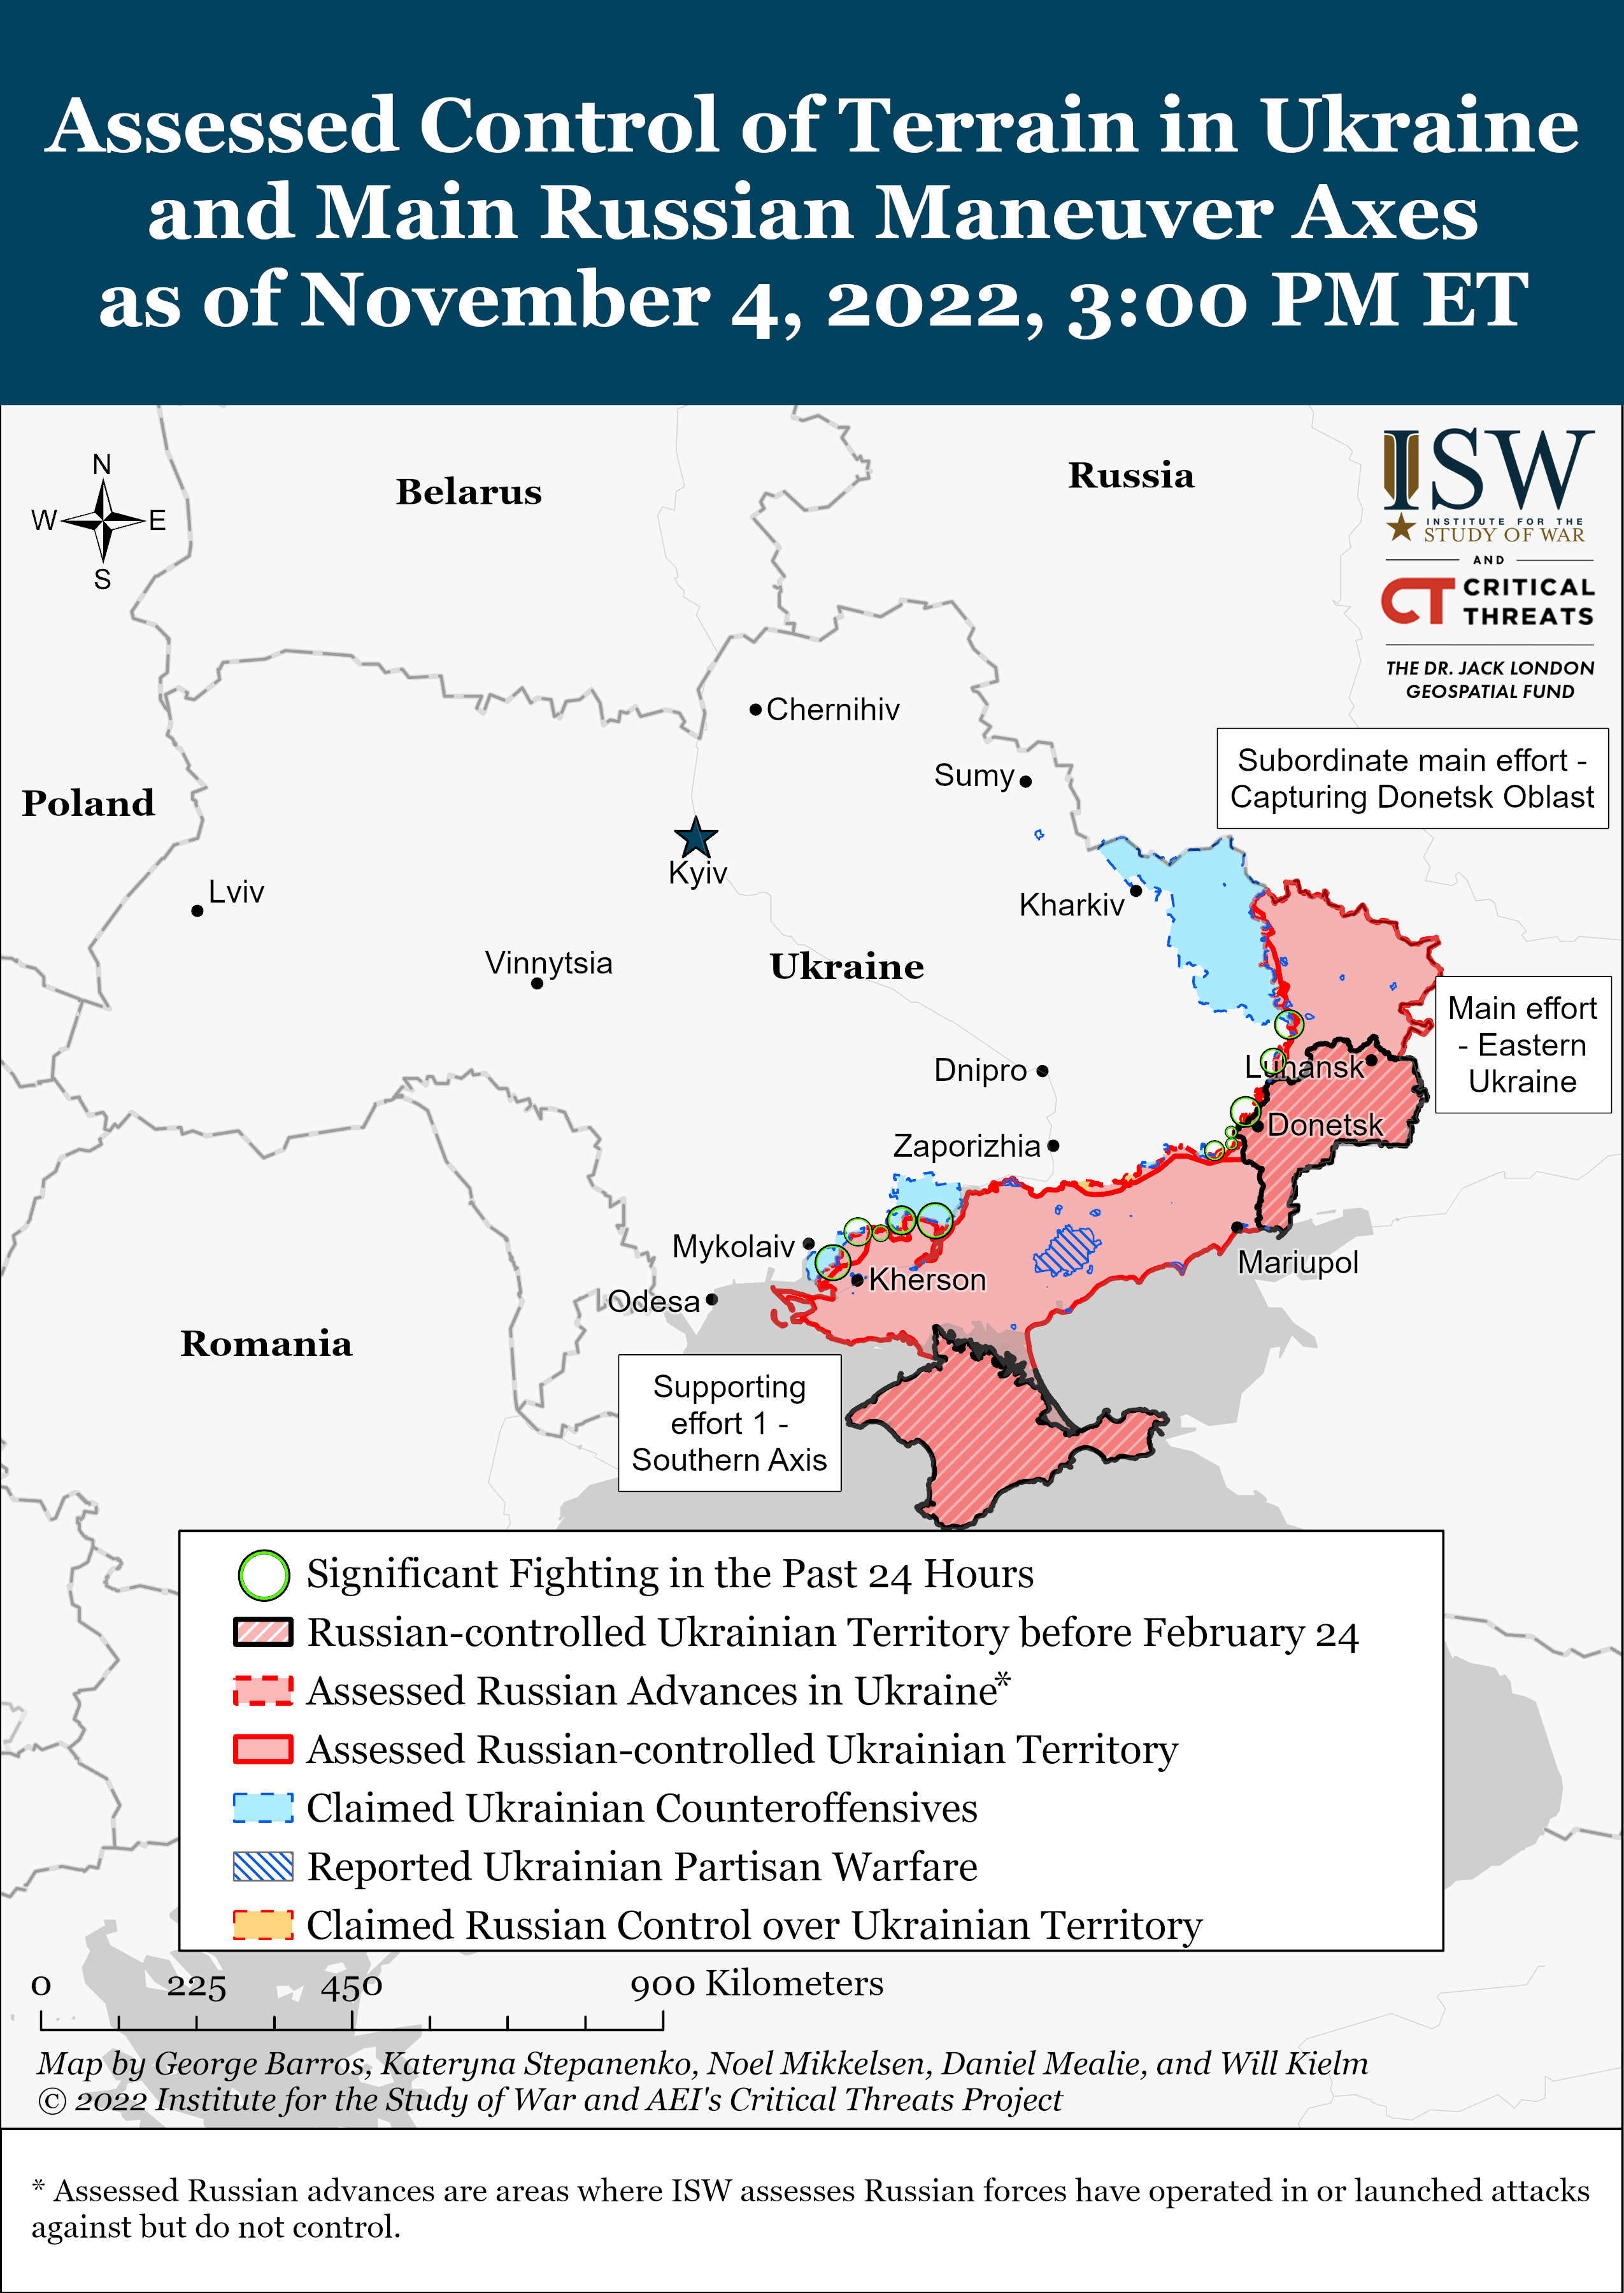 Про це повідомляє РБК-Україна з посиланням на дані Інституту вивчення війни (ISW).